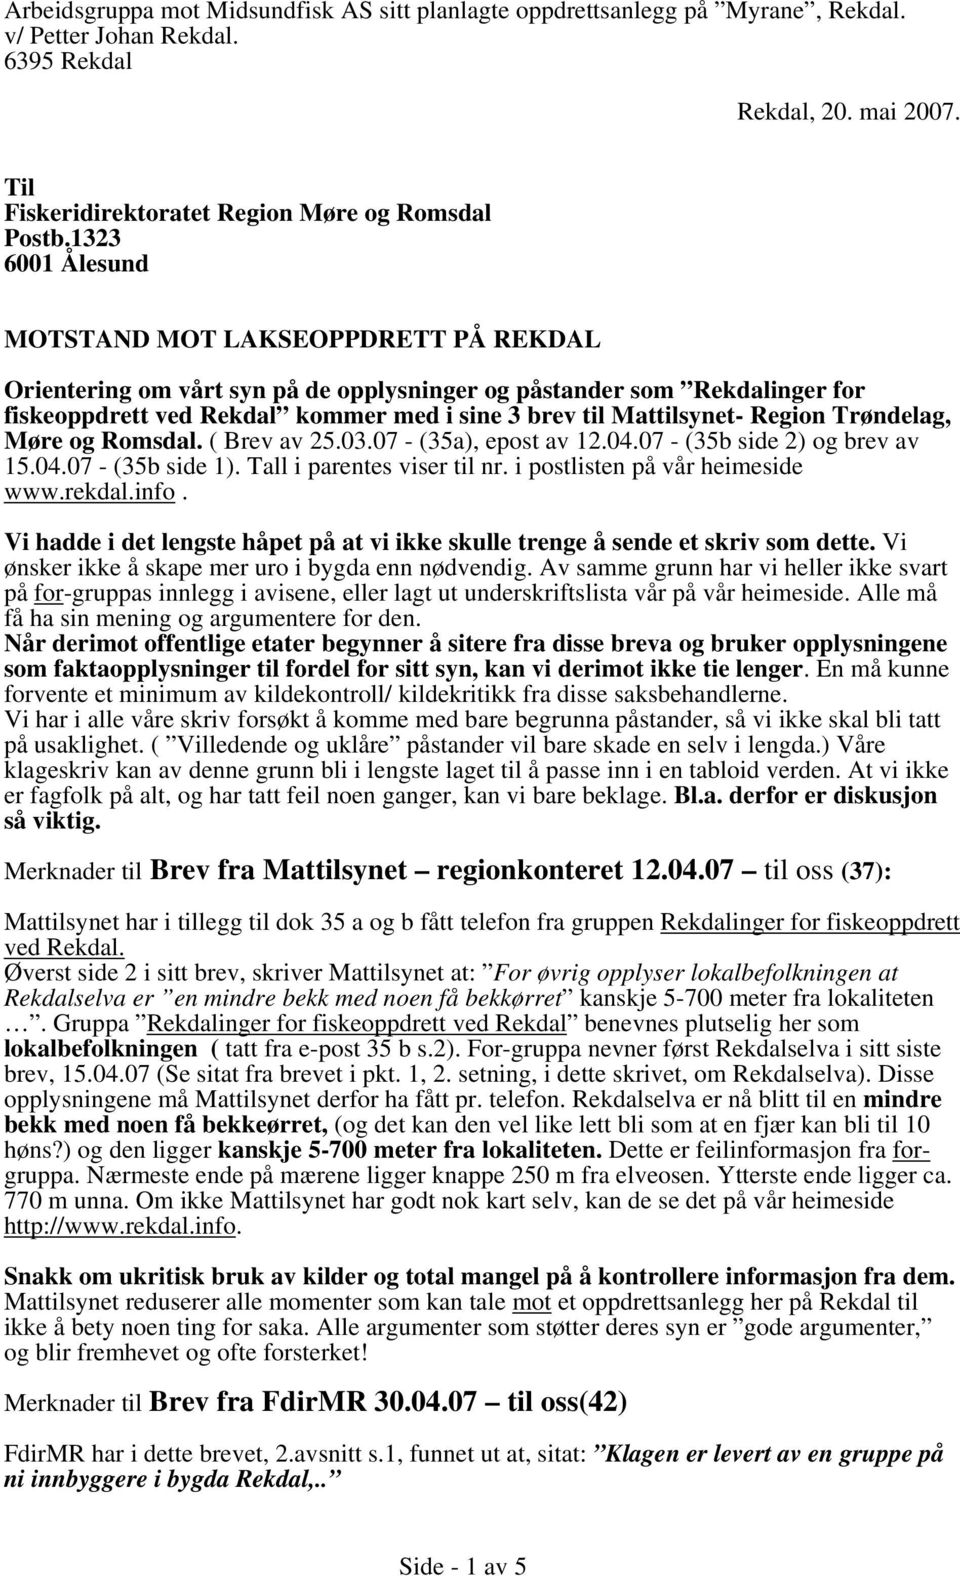 Region Trøndelag, Møre og Romsdal. ( Brev av 25.03.07 - (35a), epost av 12.04.07 - (35b side 2) og brev av 15.04.07 - (35b side 1). Tall i parentes viser til nr. i postlisten på vår heimeside www.